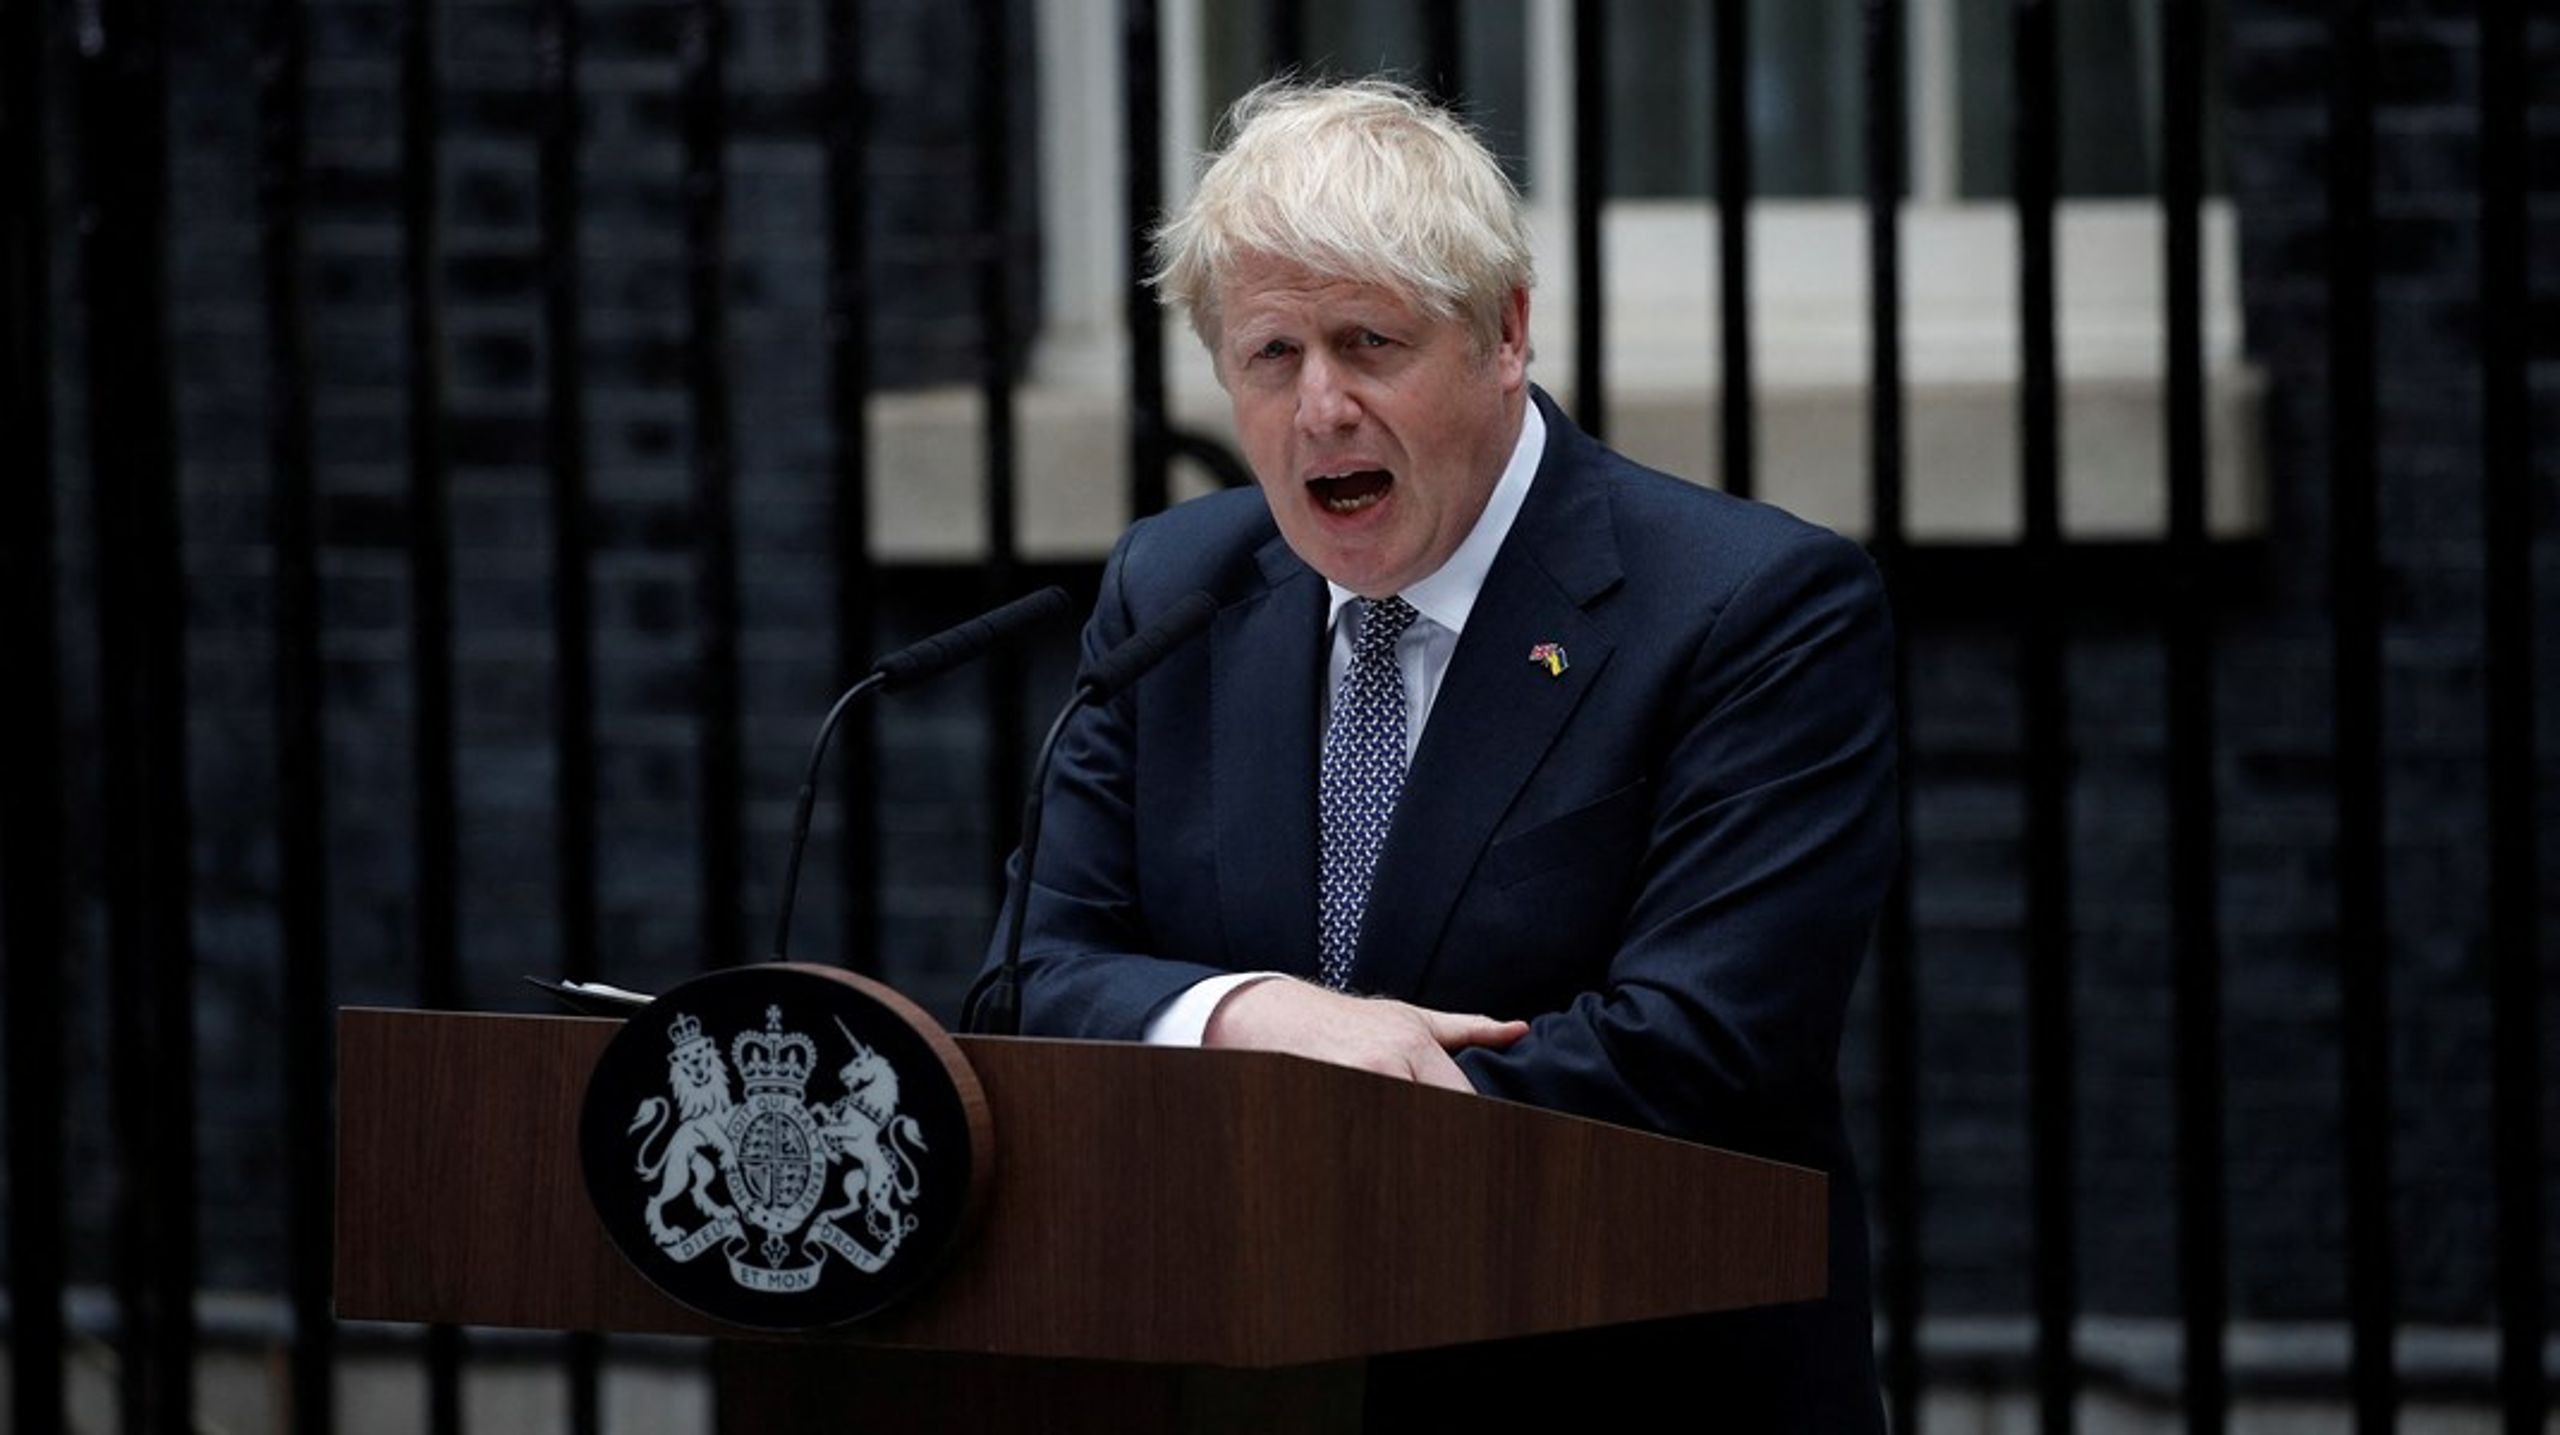 "Selvom tingene ser mørke ud nu, er vores fremtid sammen gylden," sagde Boris Johnson på pressemødet, hvor han annoncerede sin afgang som premierminister.